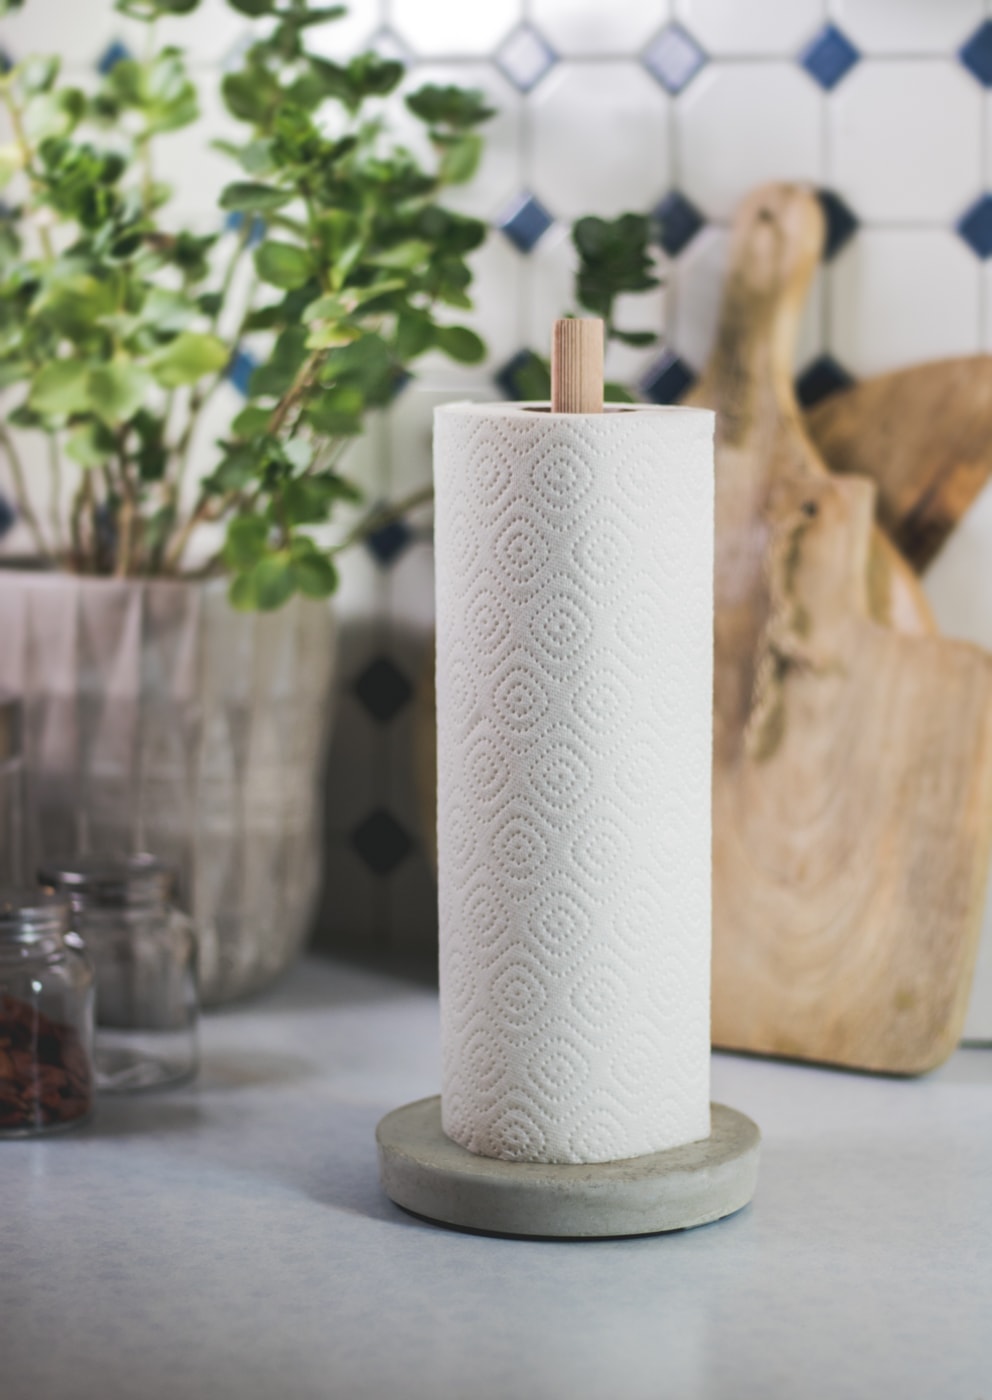 DIY Concrete Paper Towel Holder Tutorial Wendy Swohnzimmer blog